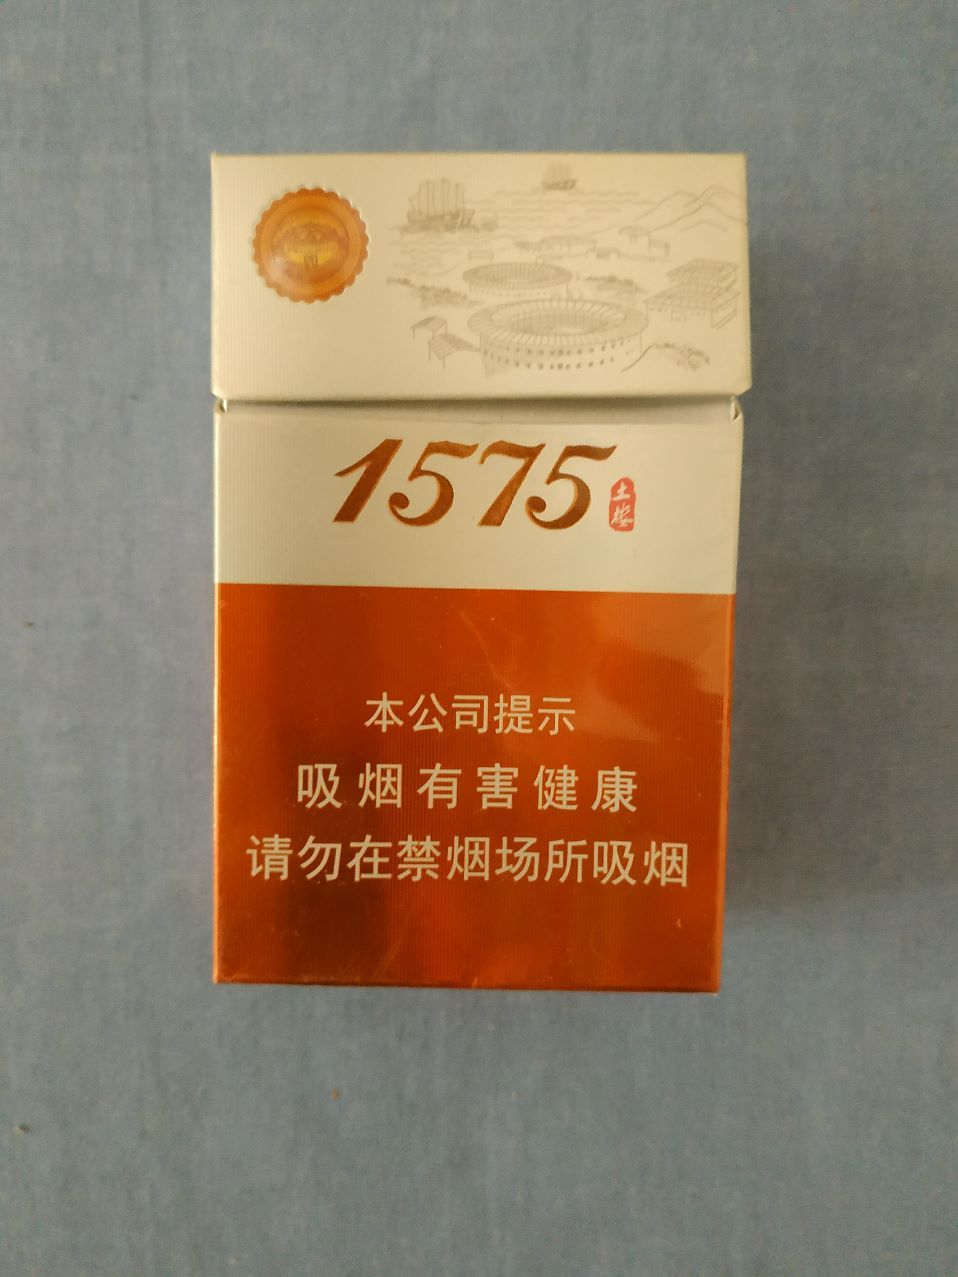 土楼香烟扁盒1575图片